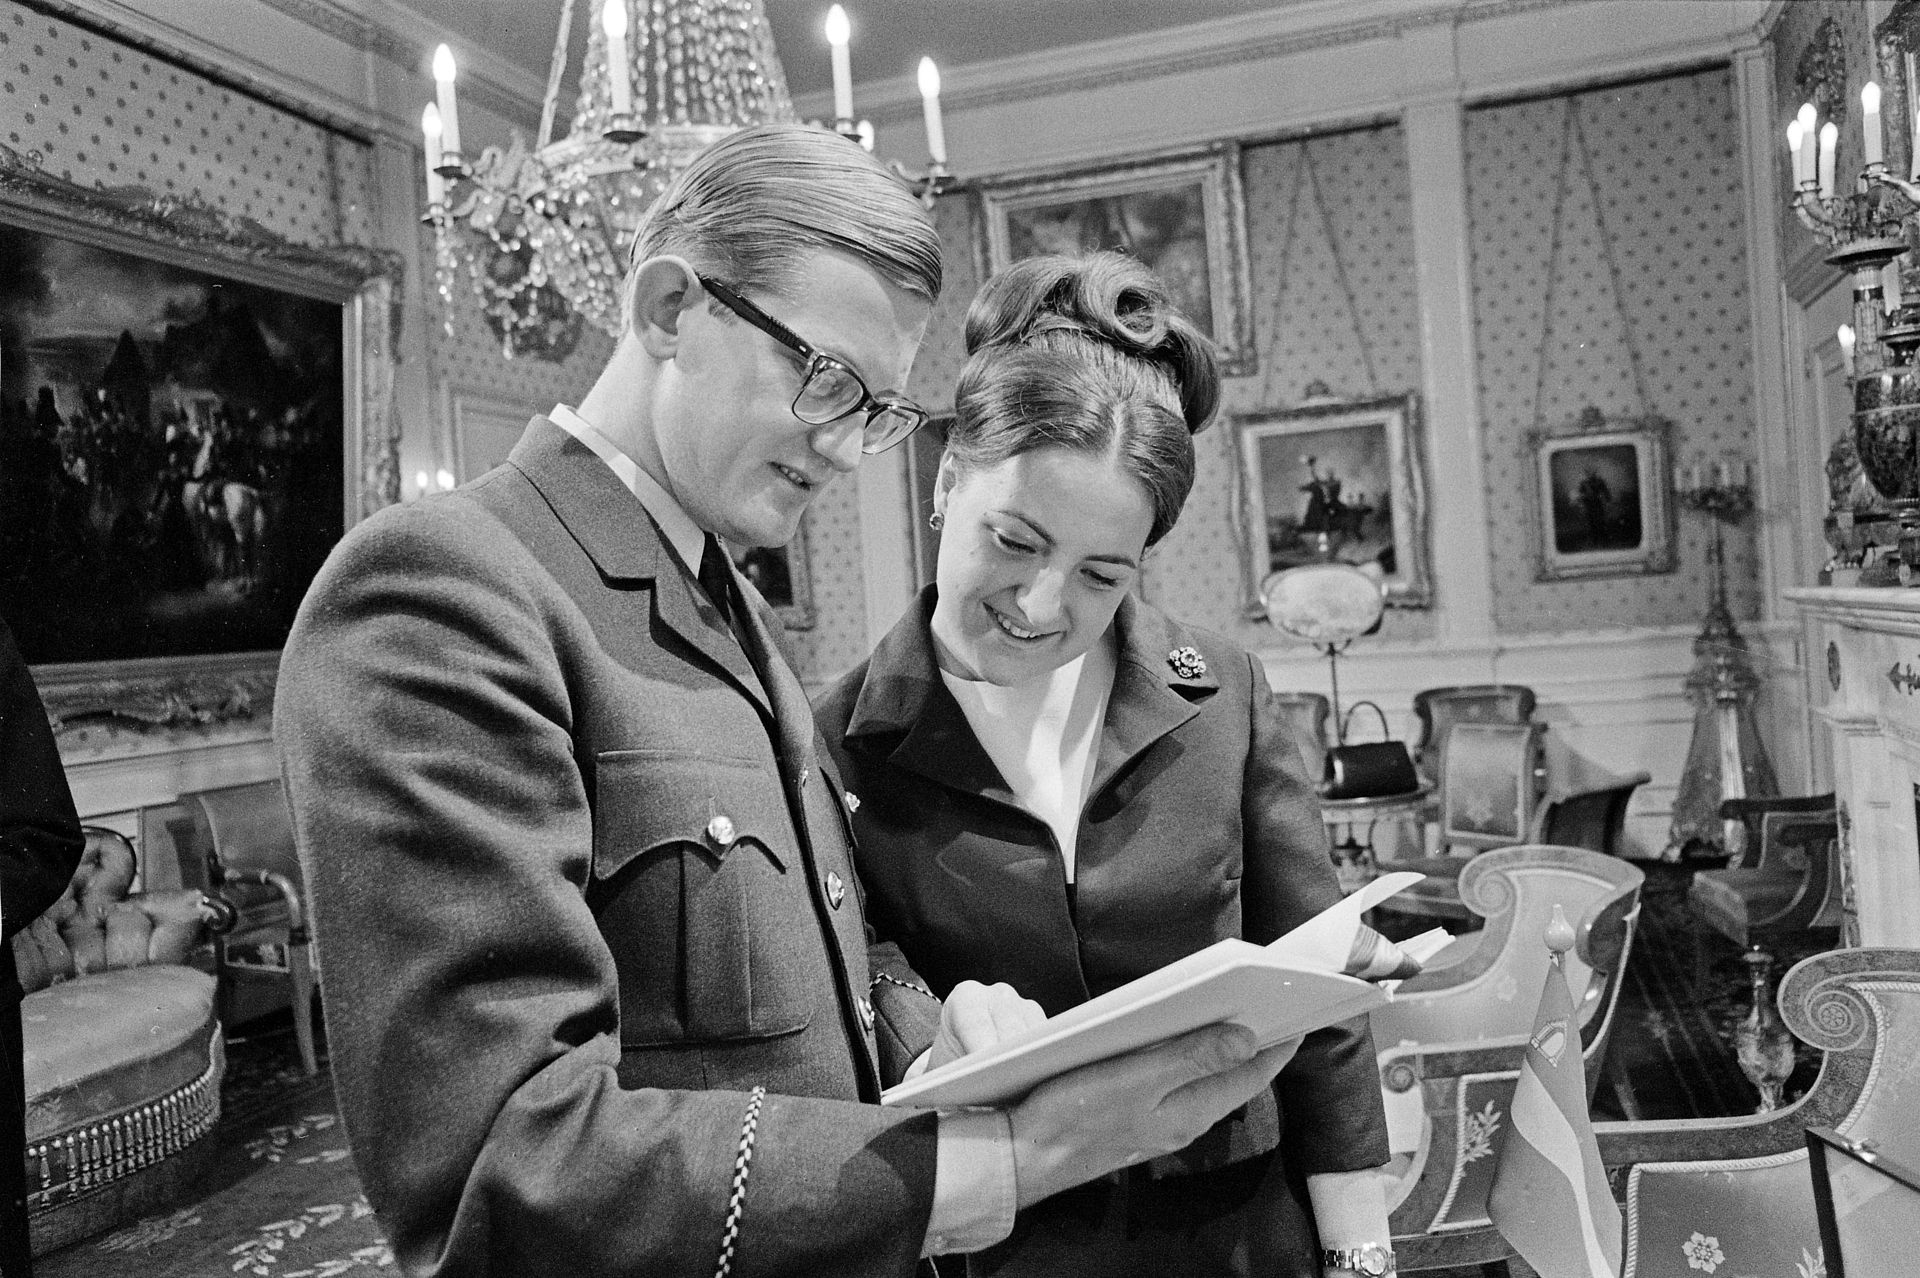 1966: Op paleis Soestdijk kregen Pieter en Margriet talloze cadeaus van het Nederlandse volk voor